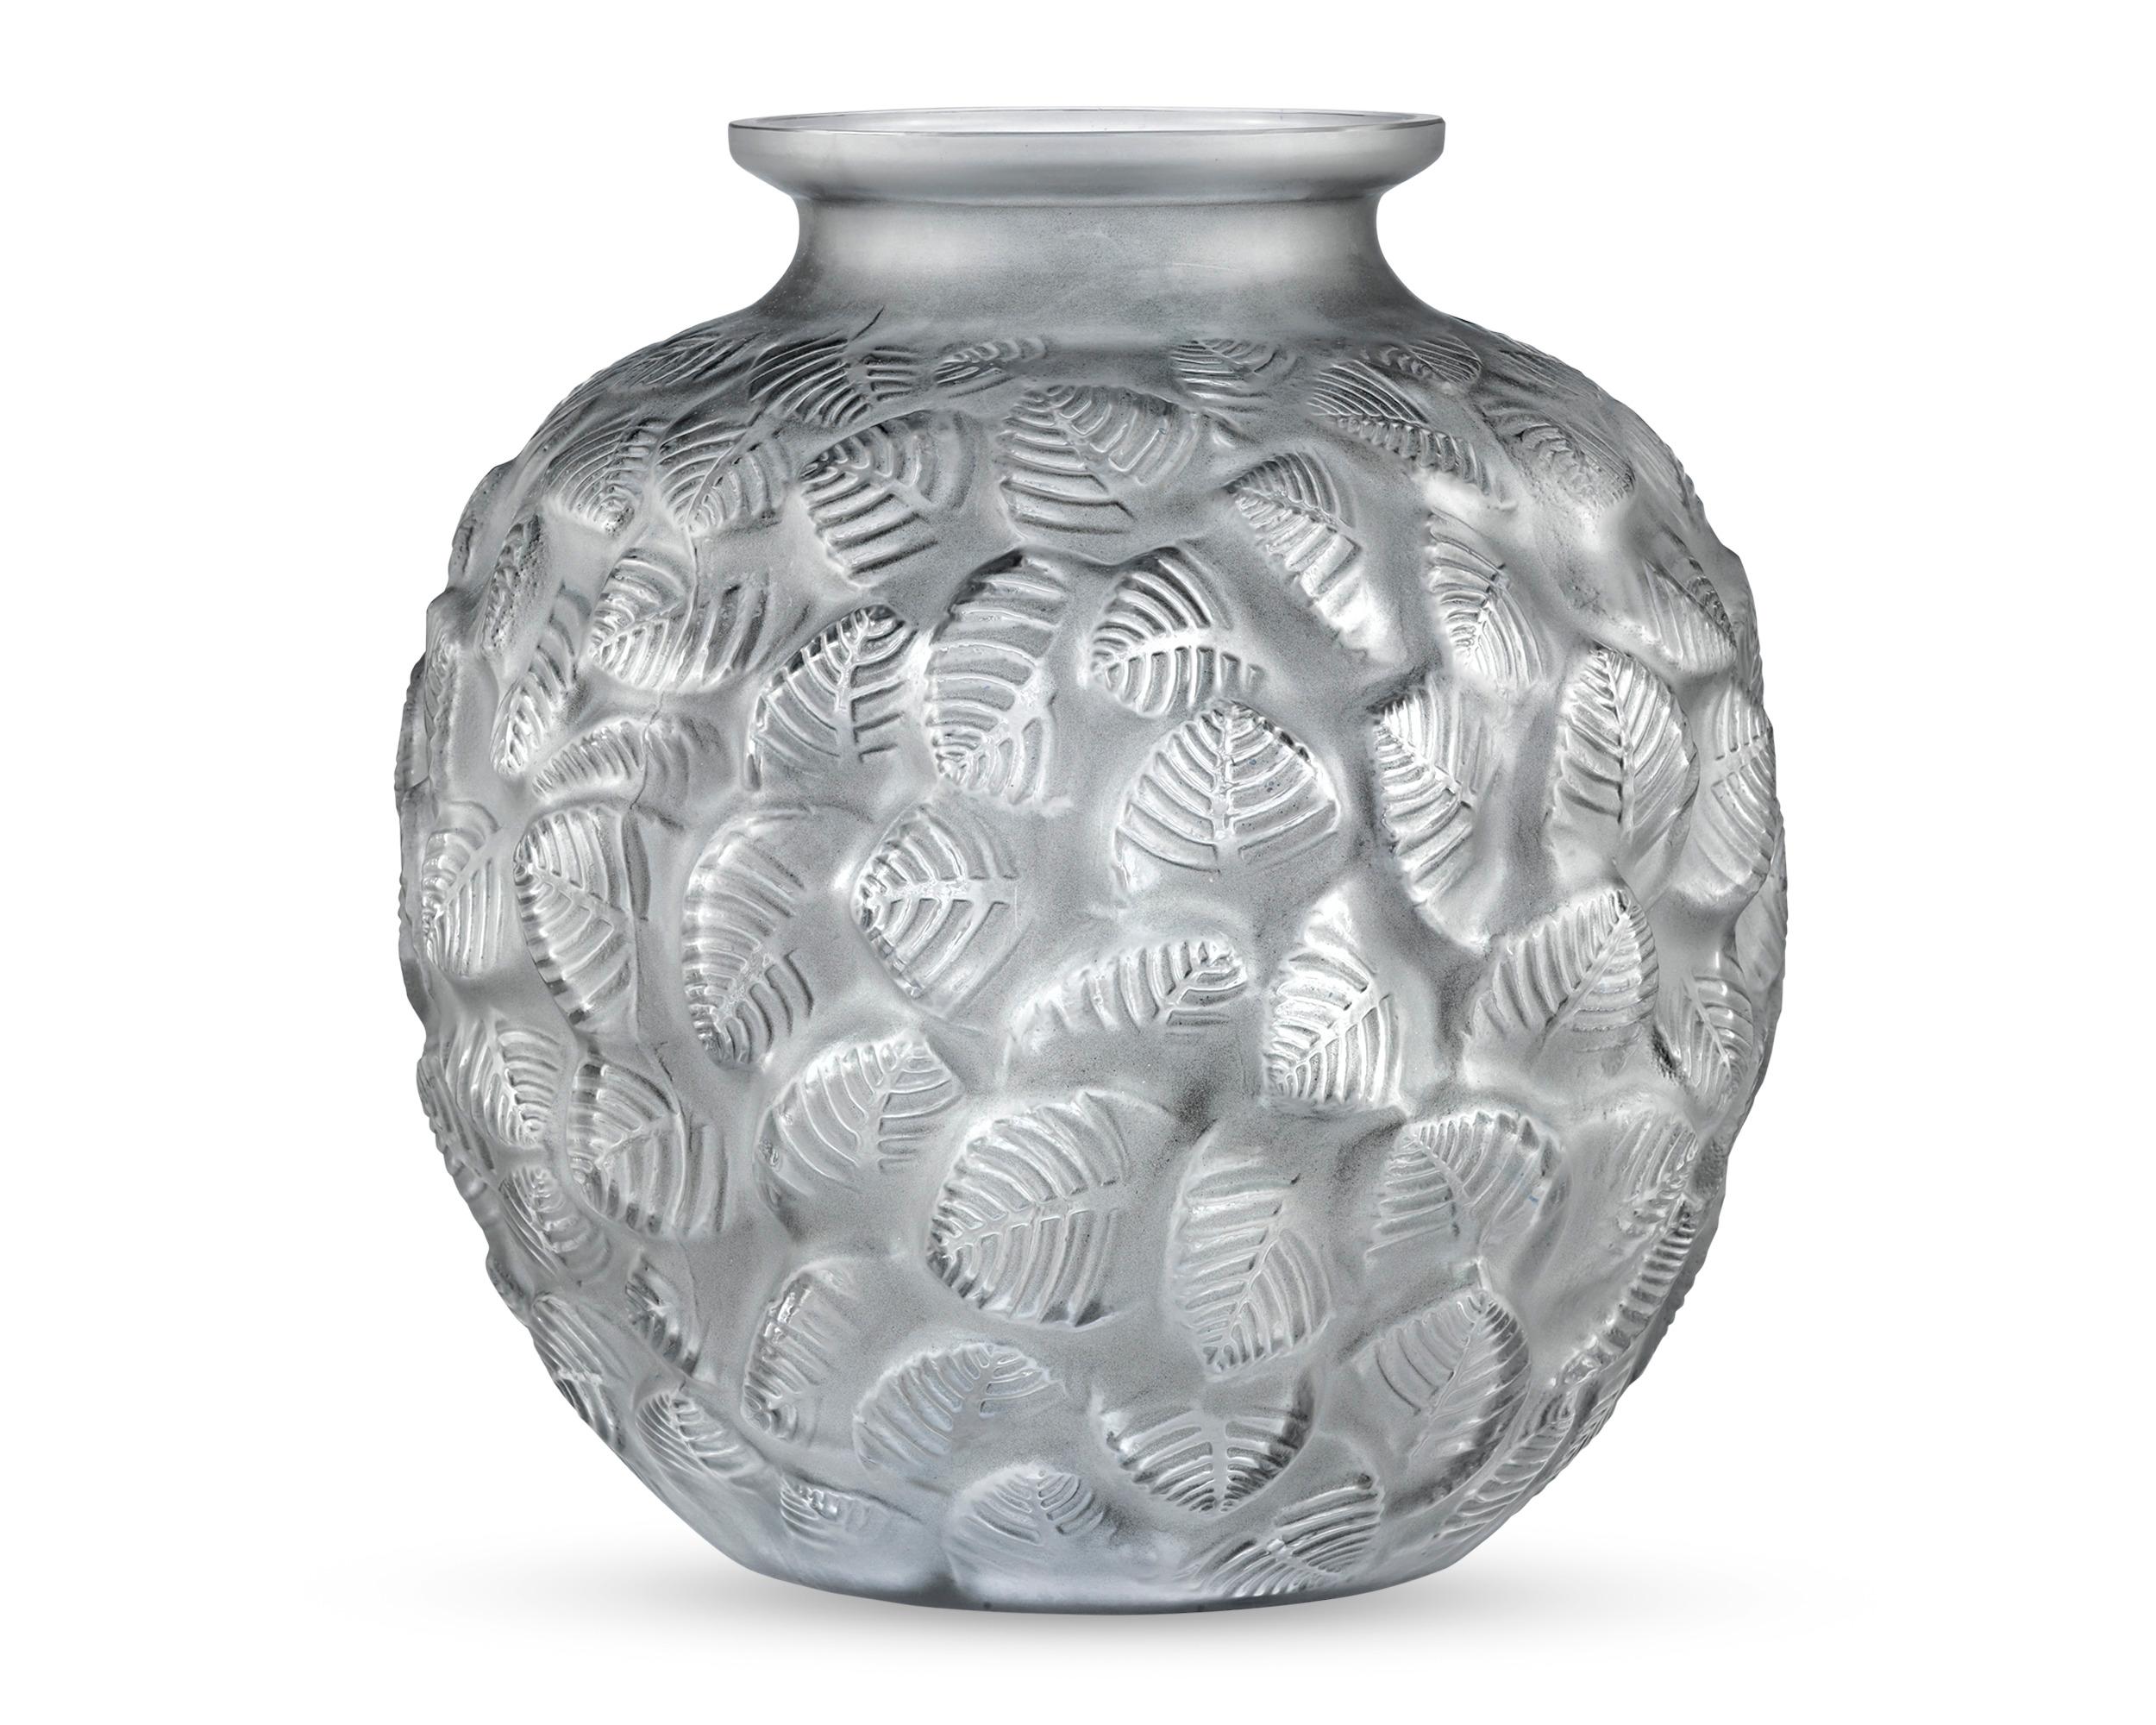 Abstrahierte Blattmotive überlagern sich in dieser Vase von Lalique mit dem Charmilles-Motiv, das René Lalique erstmals am 8. Oktober 1926 entwarf. Diese Vase aus elegantem Milchglas ist von Bower unter Grünpflanzen inspiriert und verkörpert die